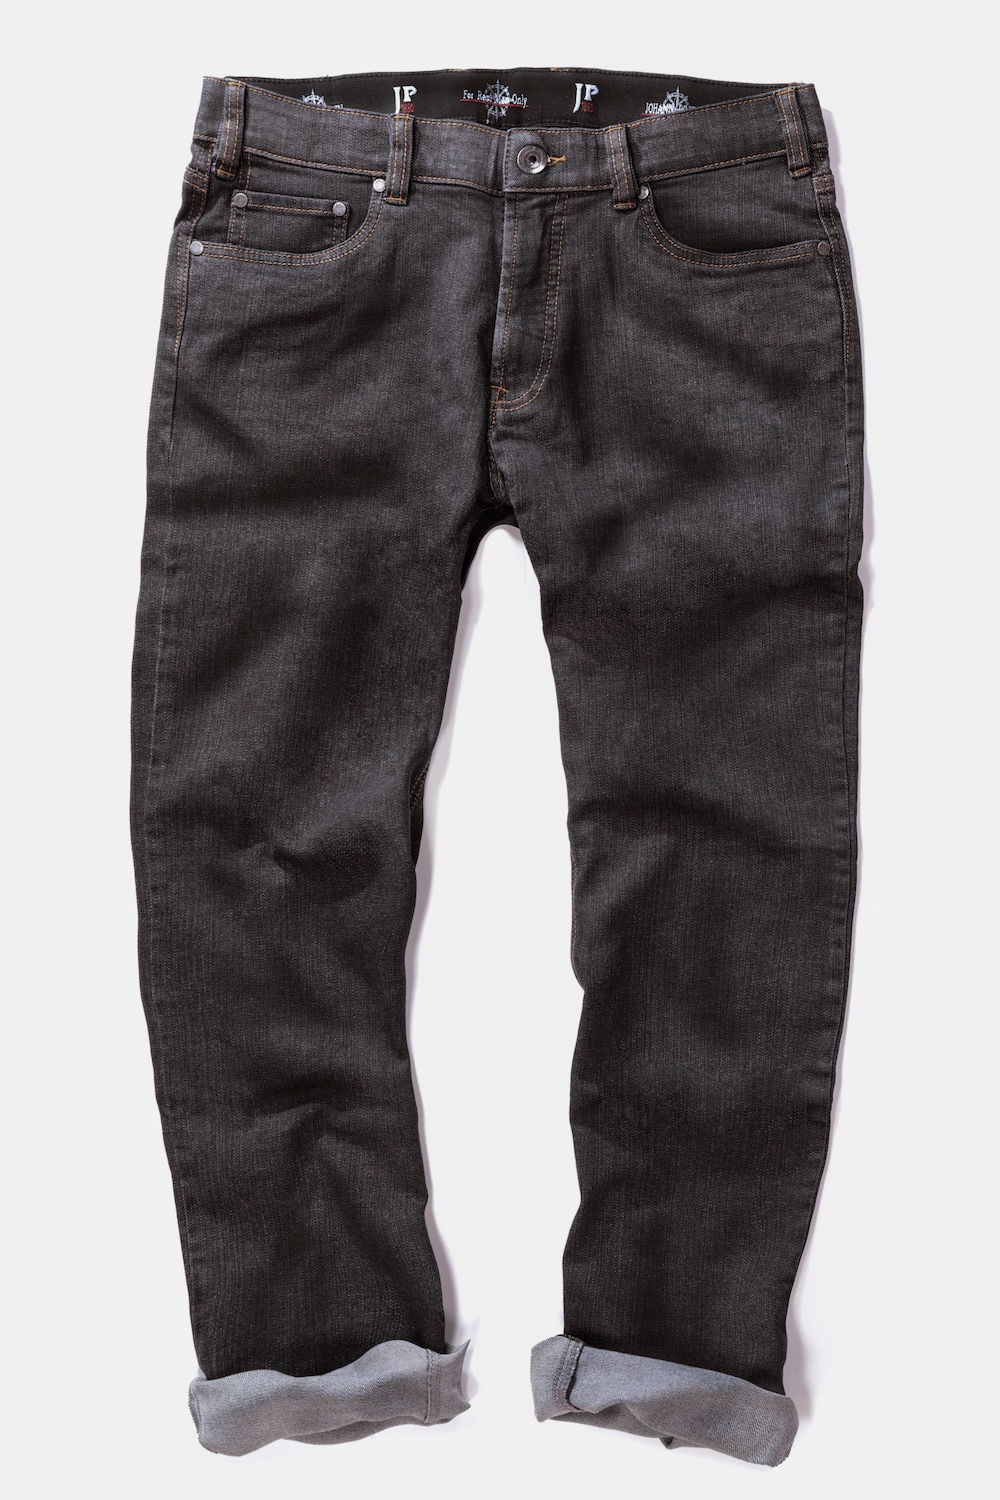 Jeans. de klassieker en bestseller van jp1880 klassiek 5 pocket model in regular fit. de jeans heeft een ...